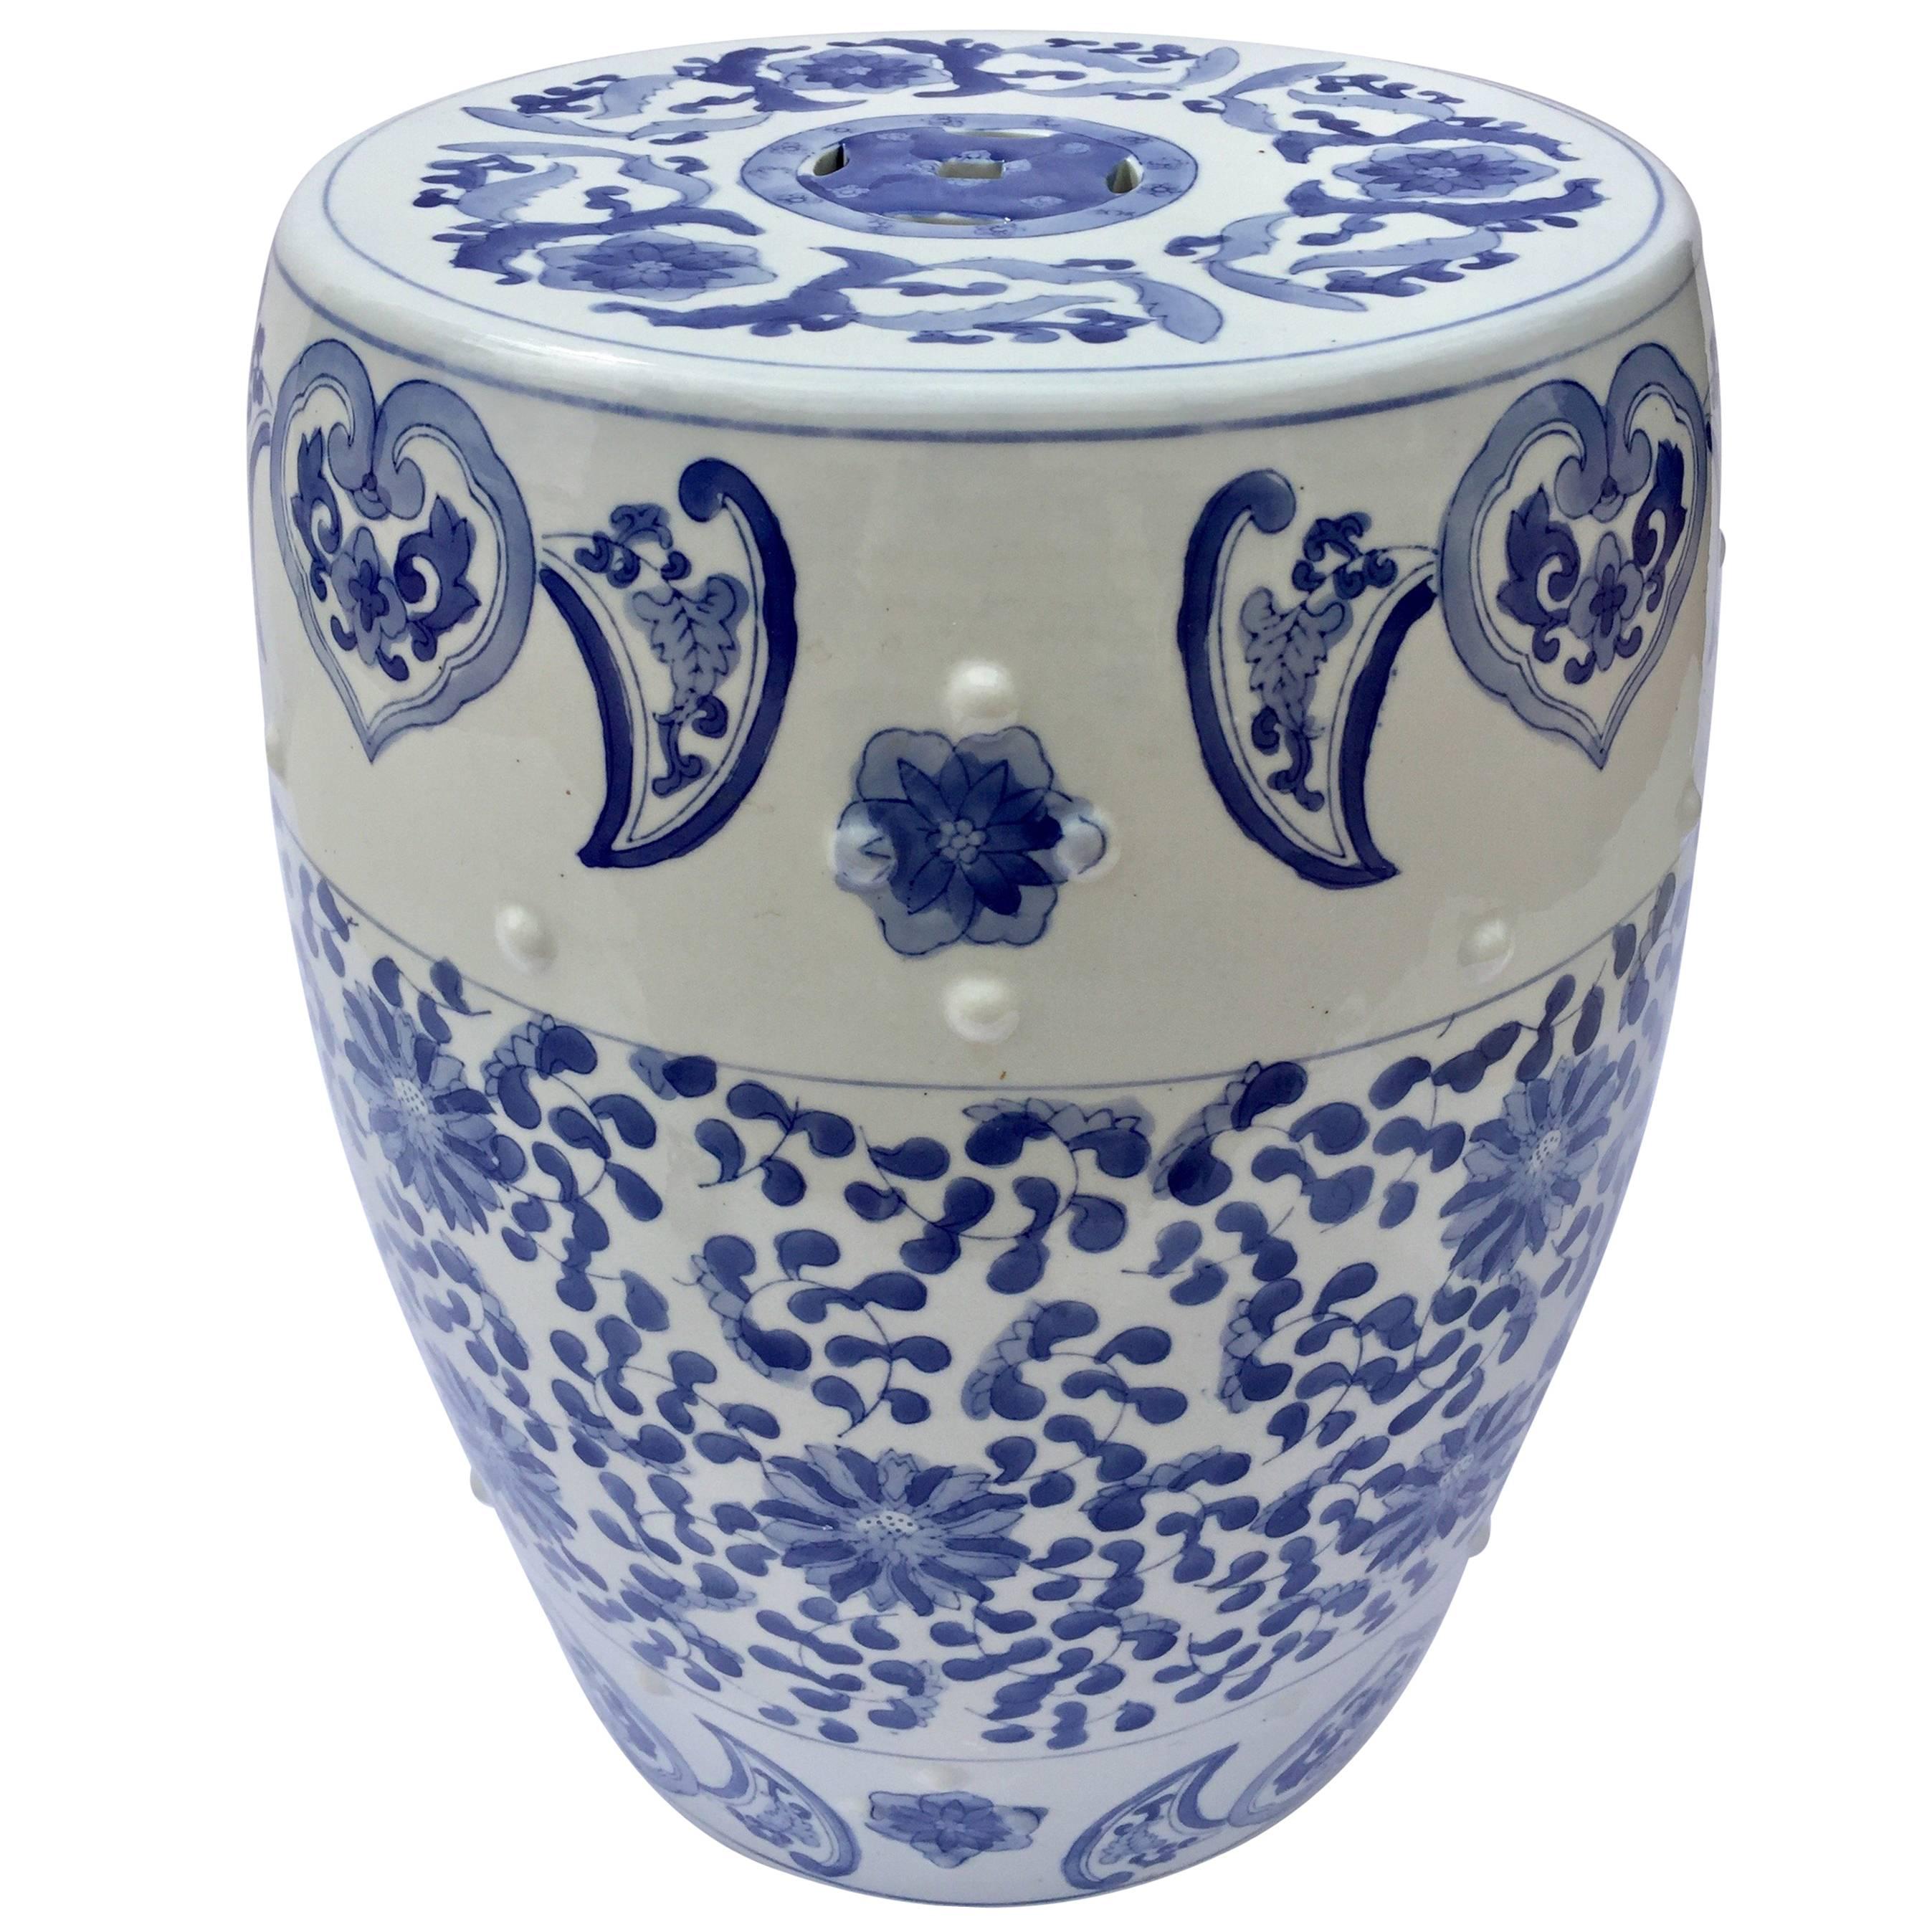 Asiatischer Gartensitz aus Keramik mit blauen und weißen Blumenmotiven